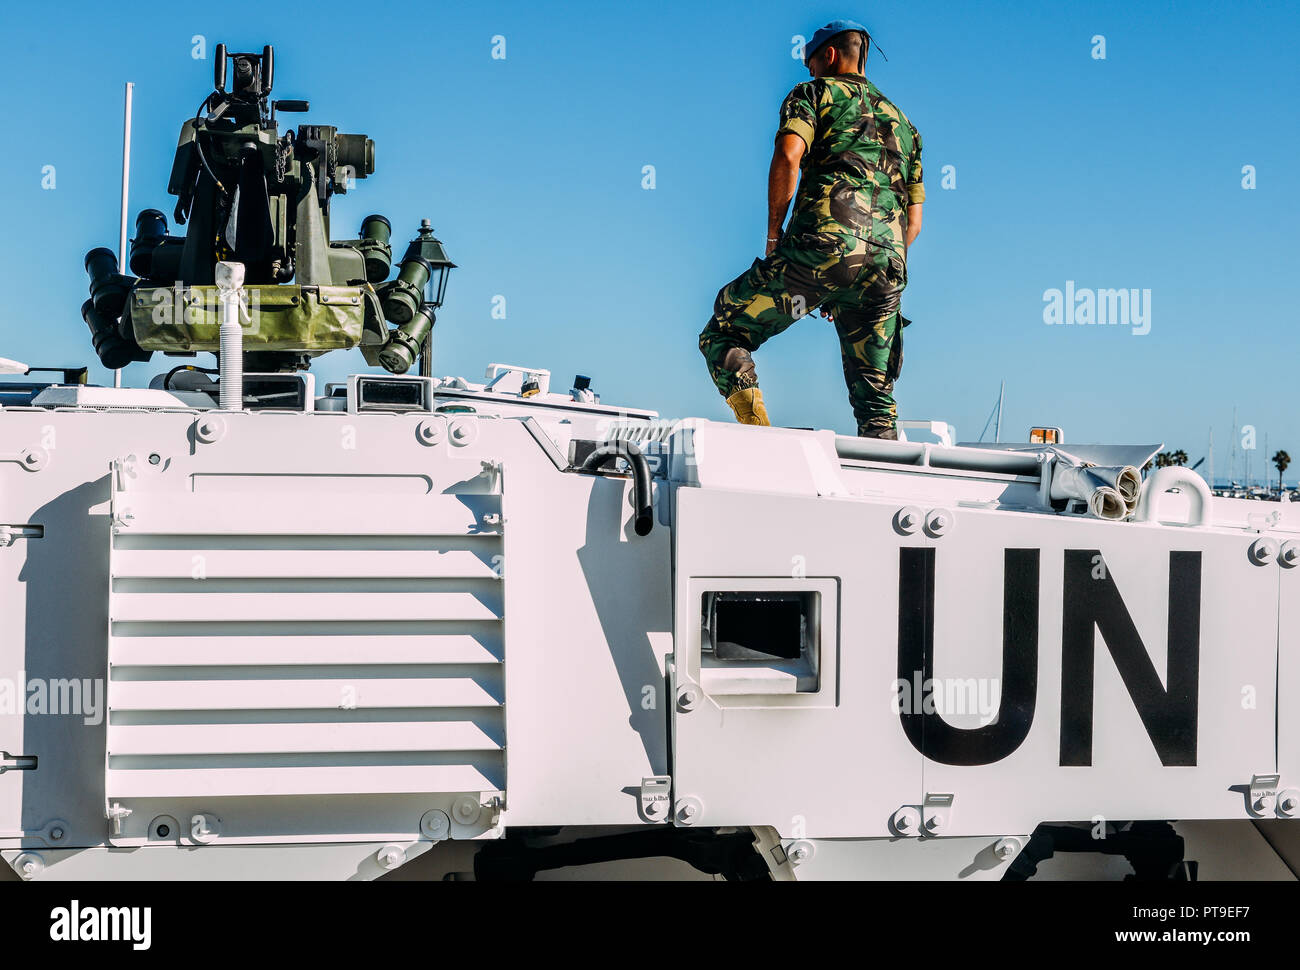 Nahaufnahme der Friedenstruppe der Vereinten Nationen tank Fahrzeug mit Maschinengewehr auf der Oberseite und nicht identifizierbare Soldat in Uniform montiert Stockfoto